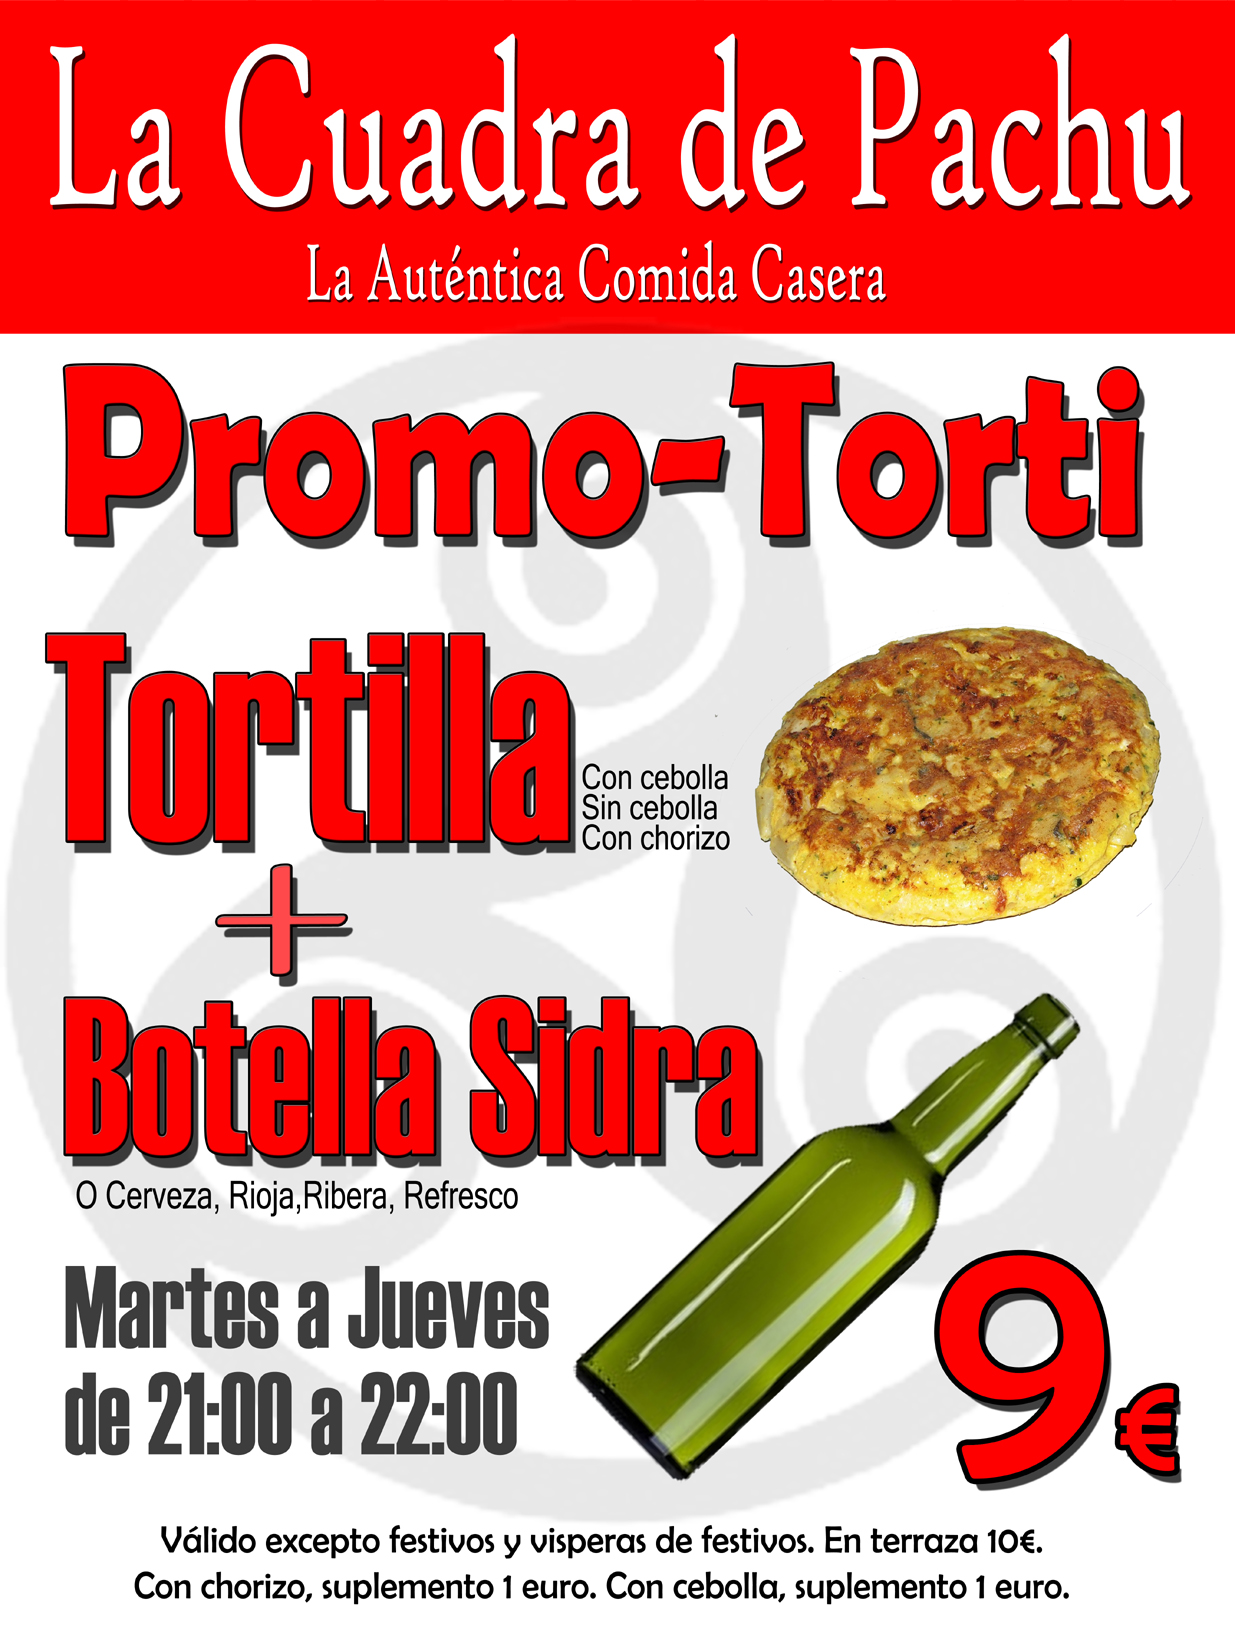 Promo-Torti